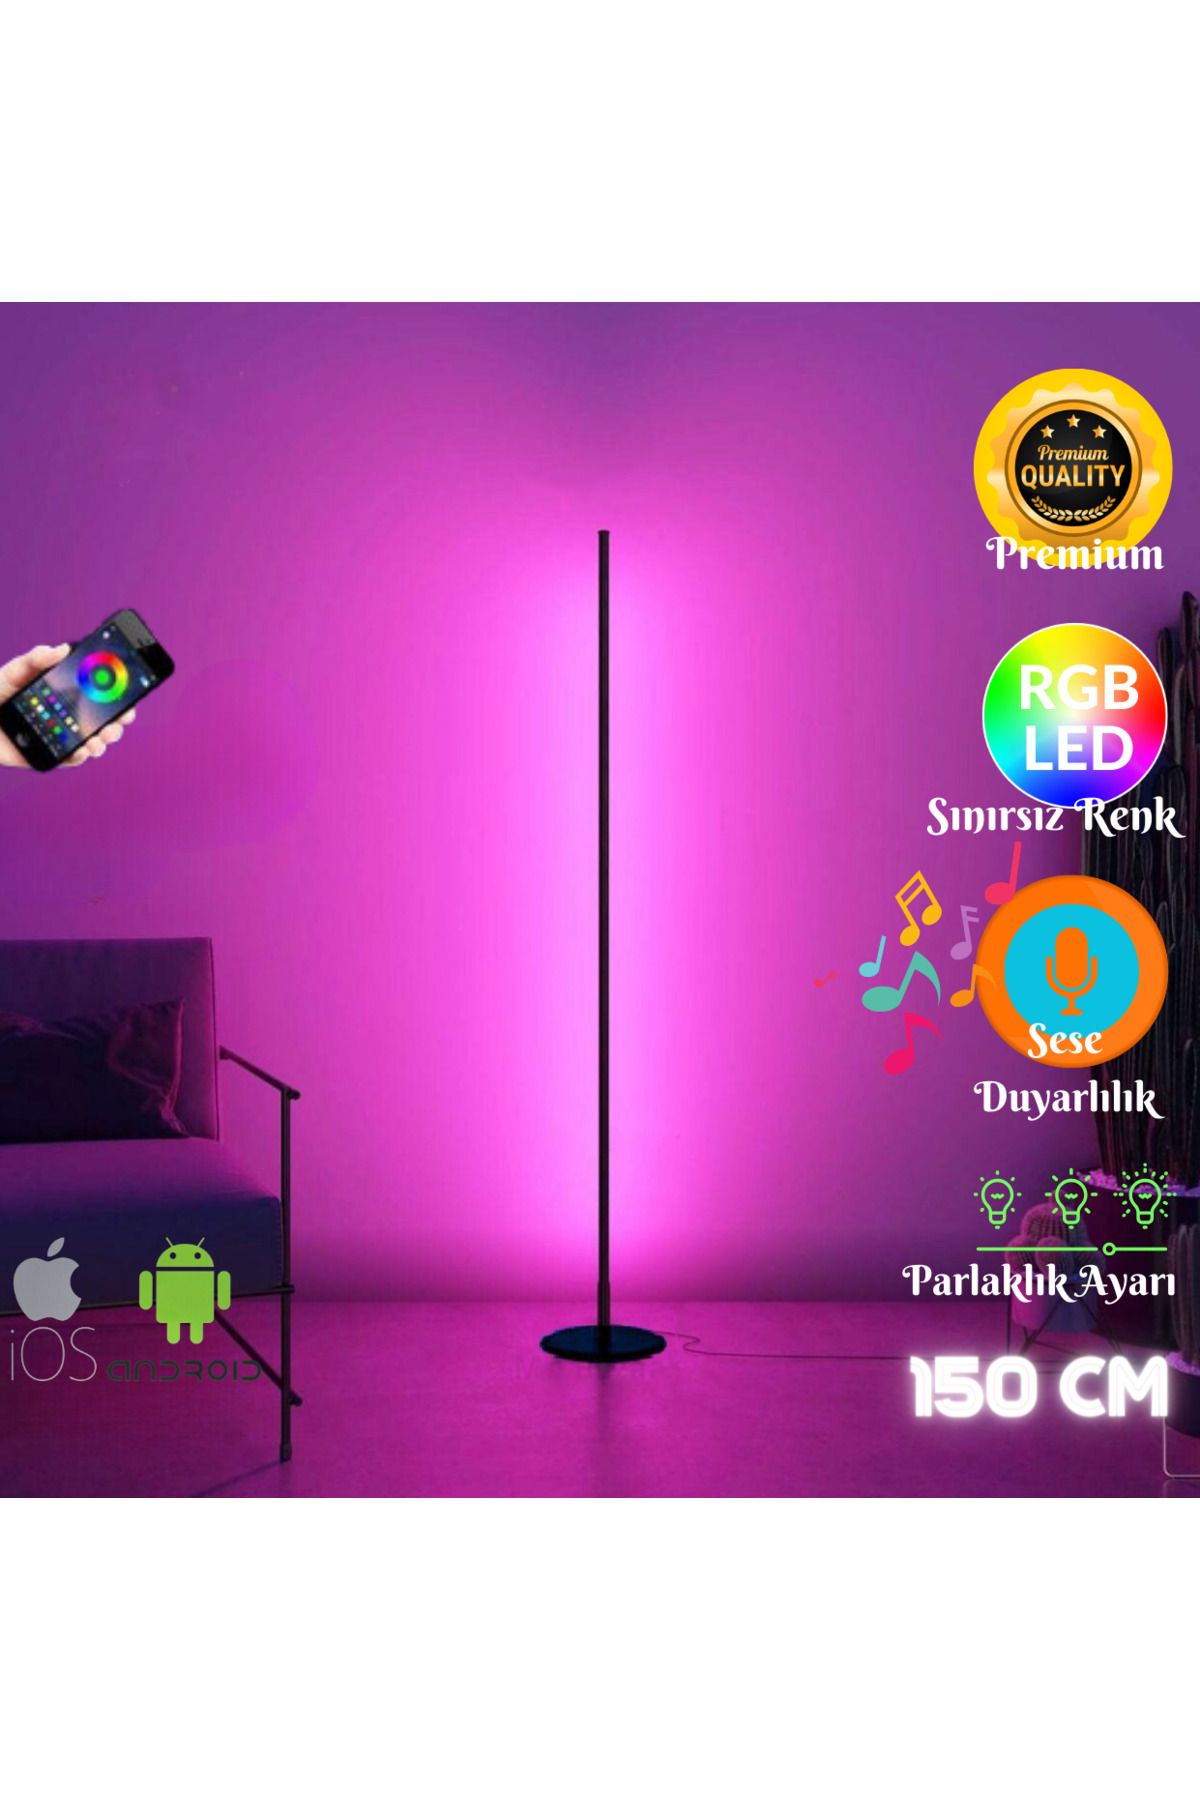 neeko Mobıl Stıck -Telefon Kontrol - Oda Aydınlatma Sistemi Full Rgb - Full Renk - Çok Özellik 150 cm